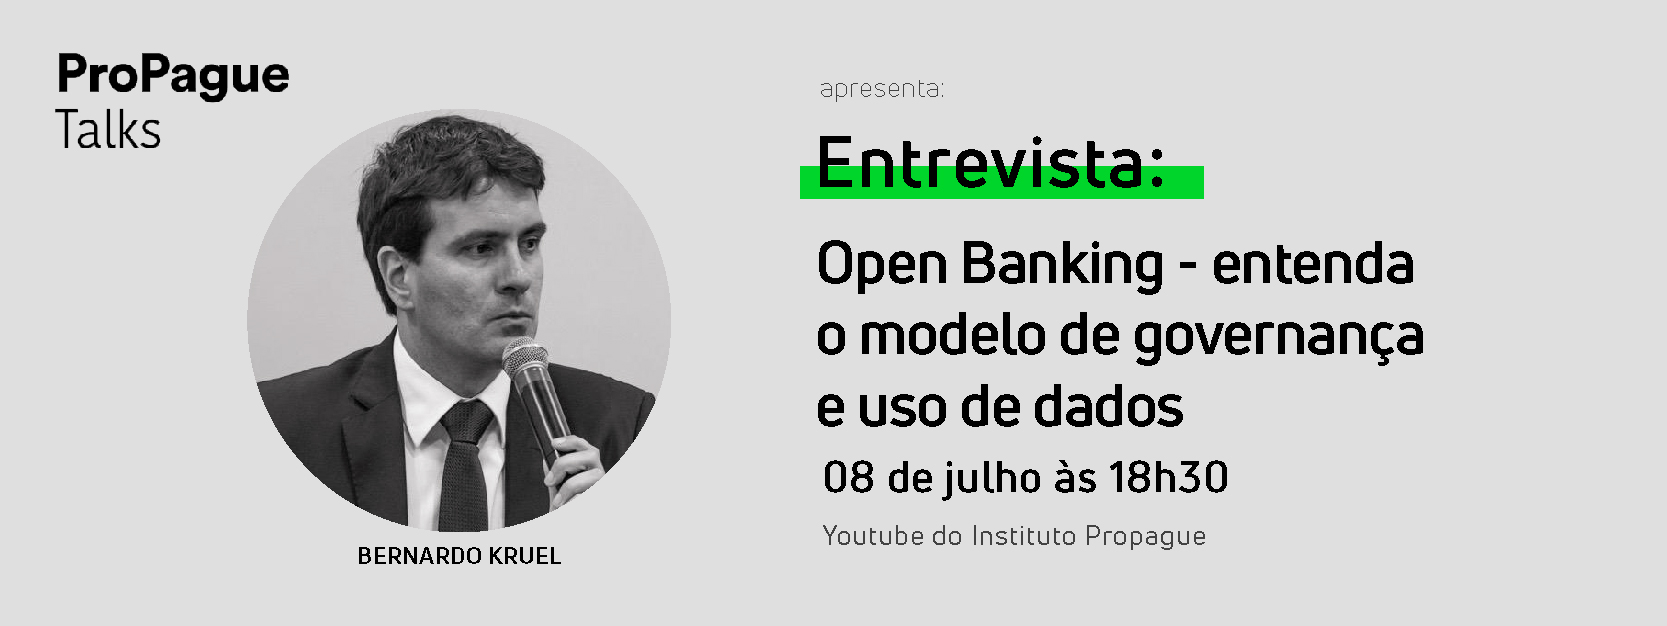 Open Banking - modelo de governança e uso de dados